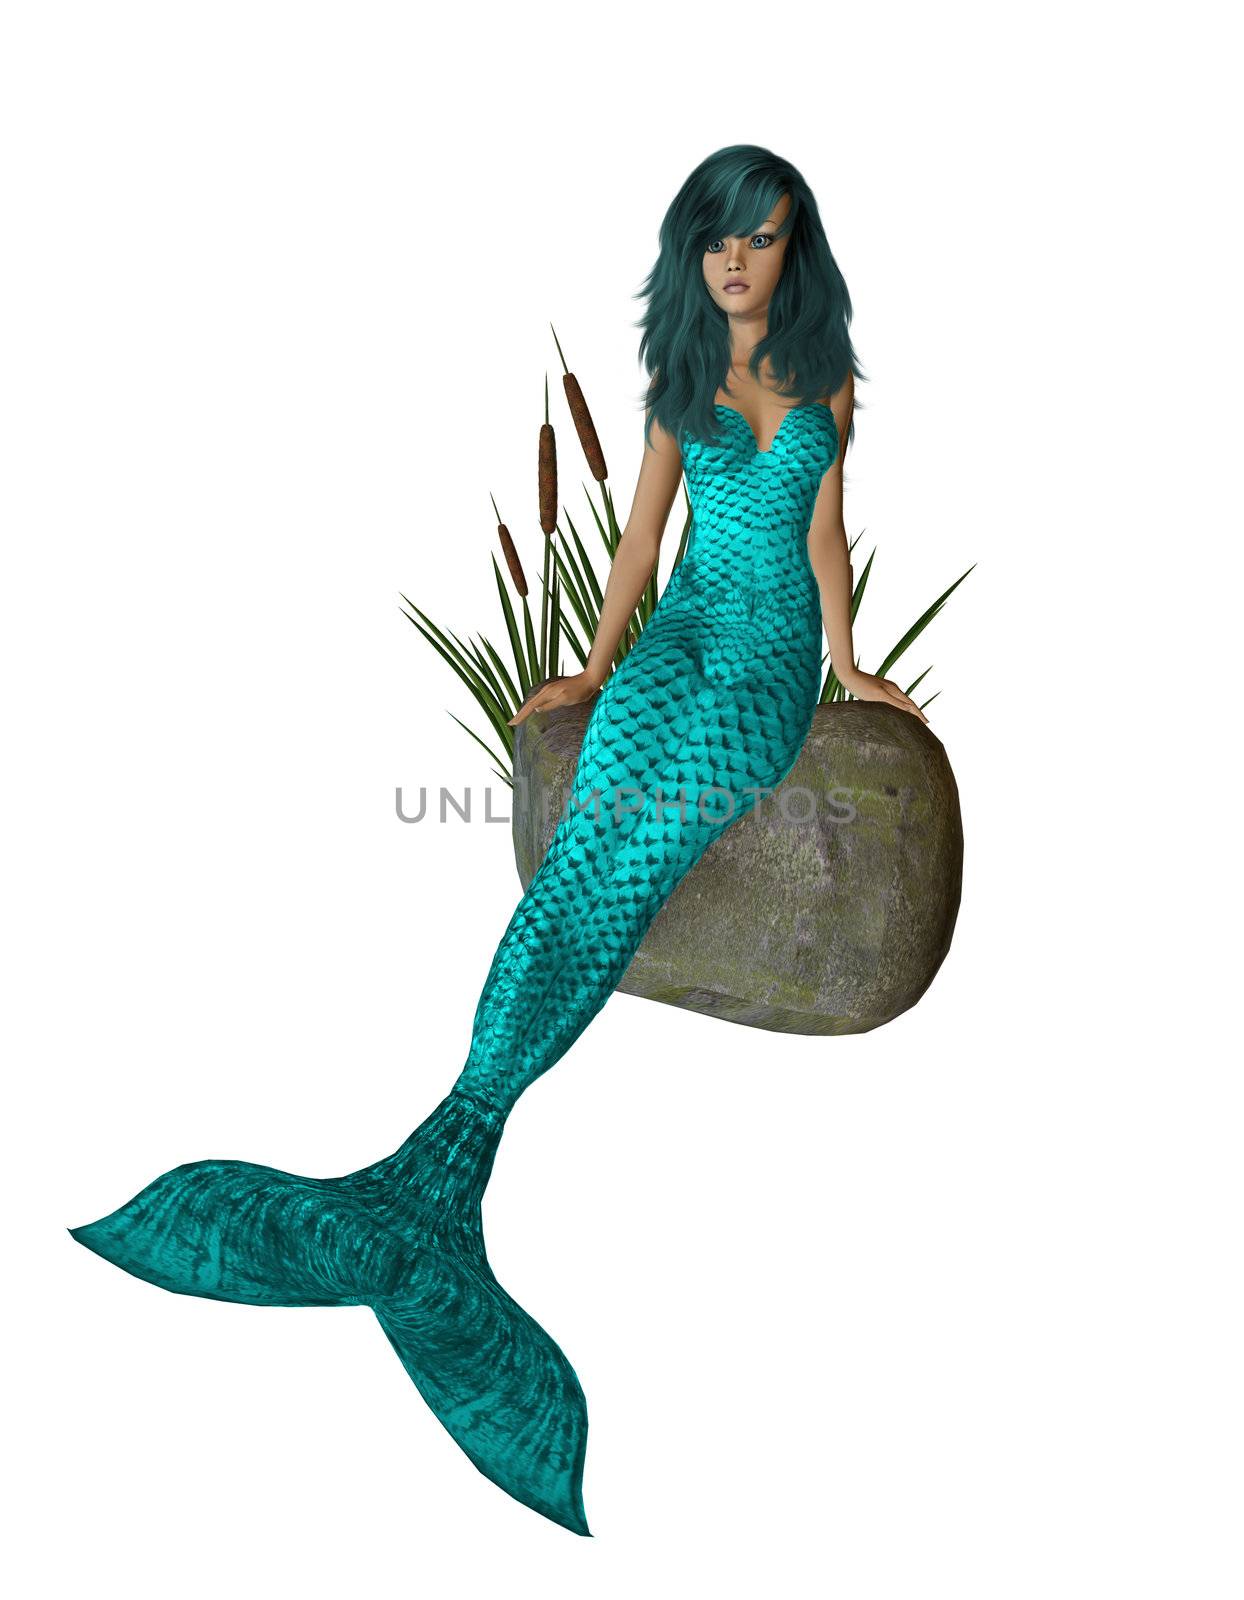 Aqua Mermaid Sitting On A Rock by kathygold